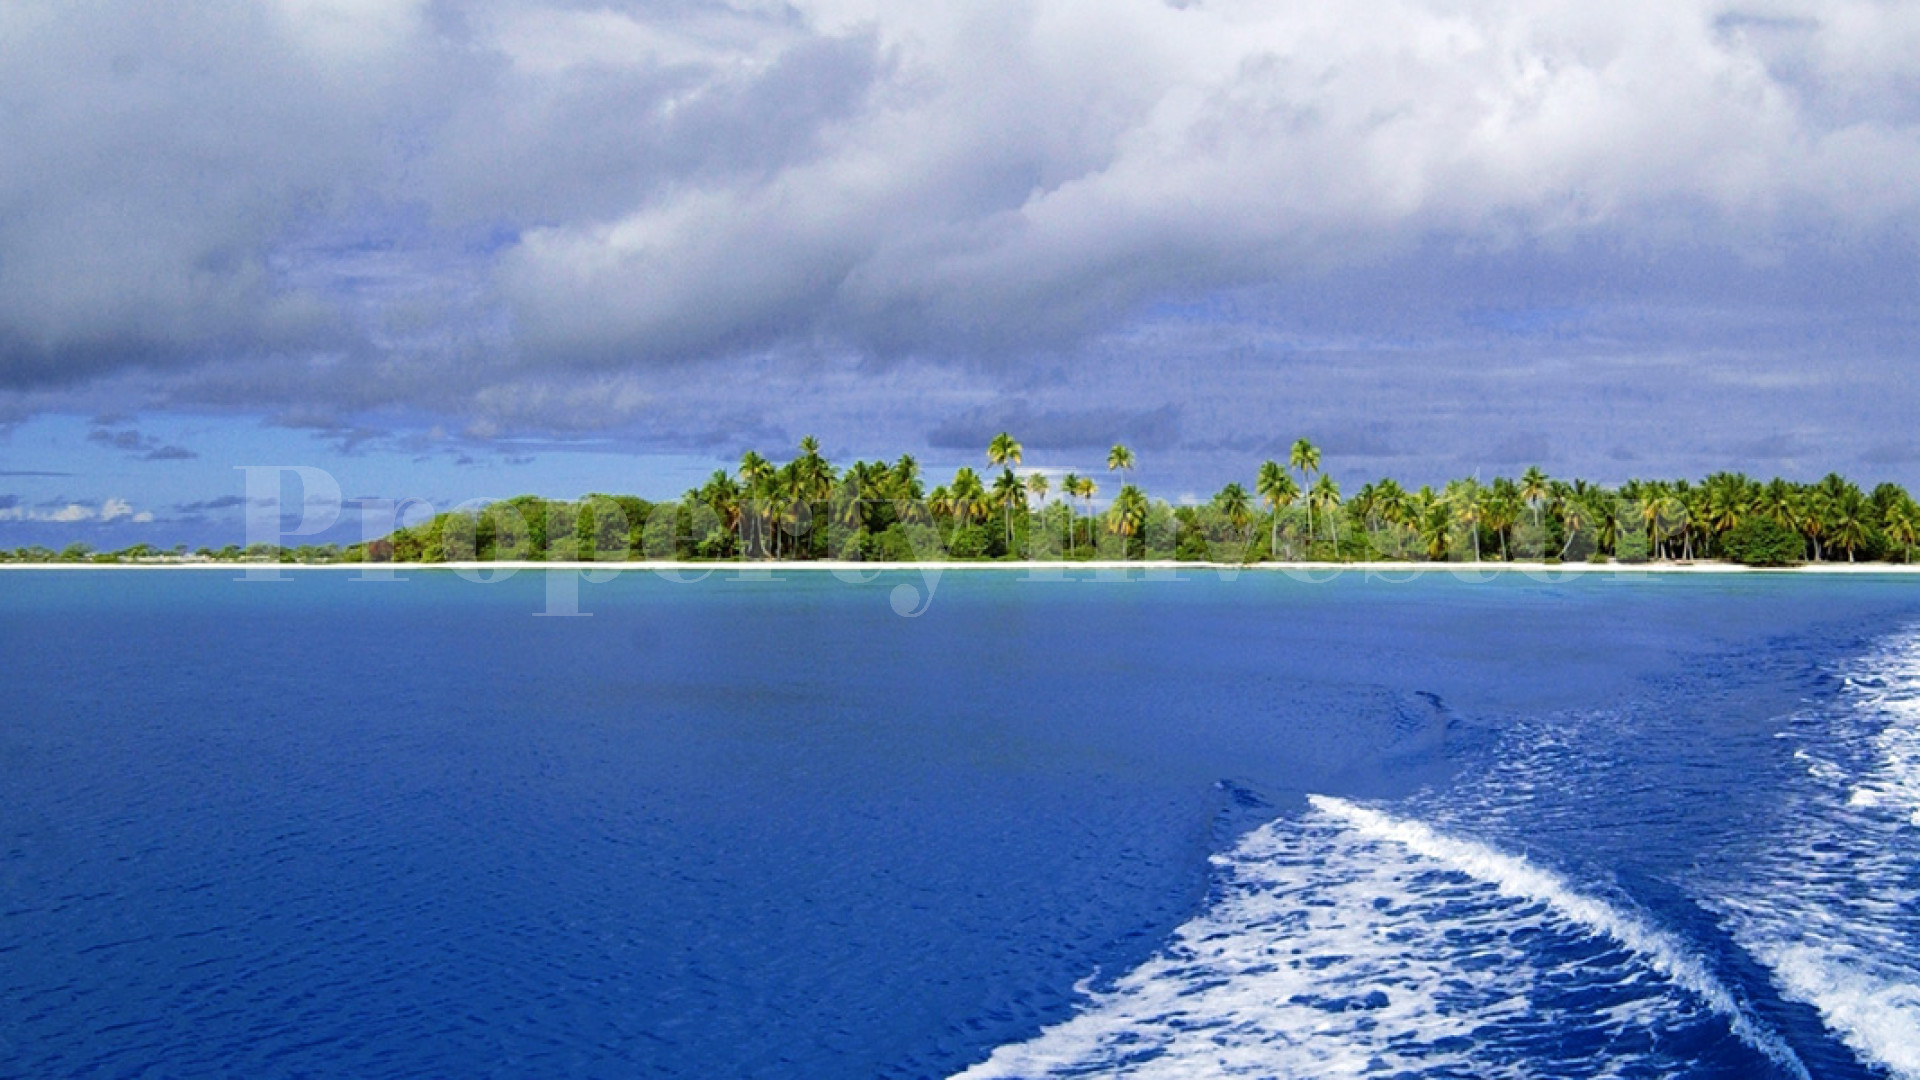 Продаётся частный дикий остров во Французской Полинезии